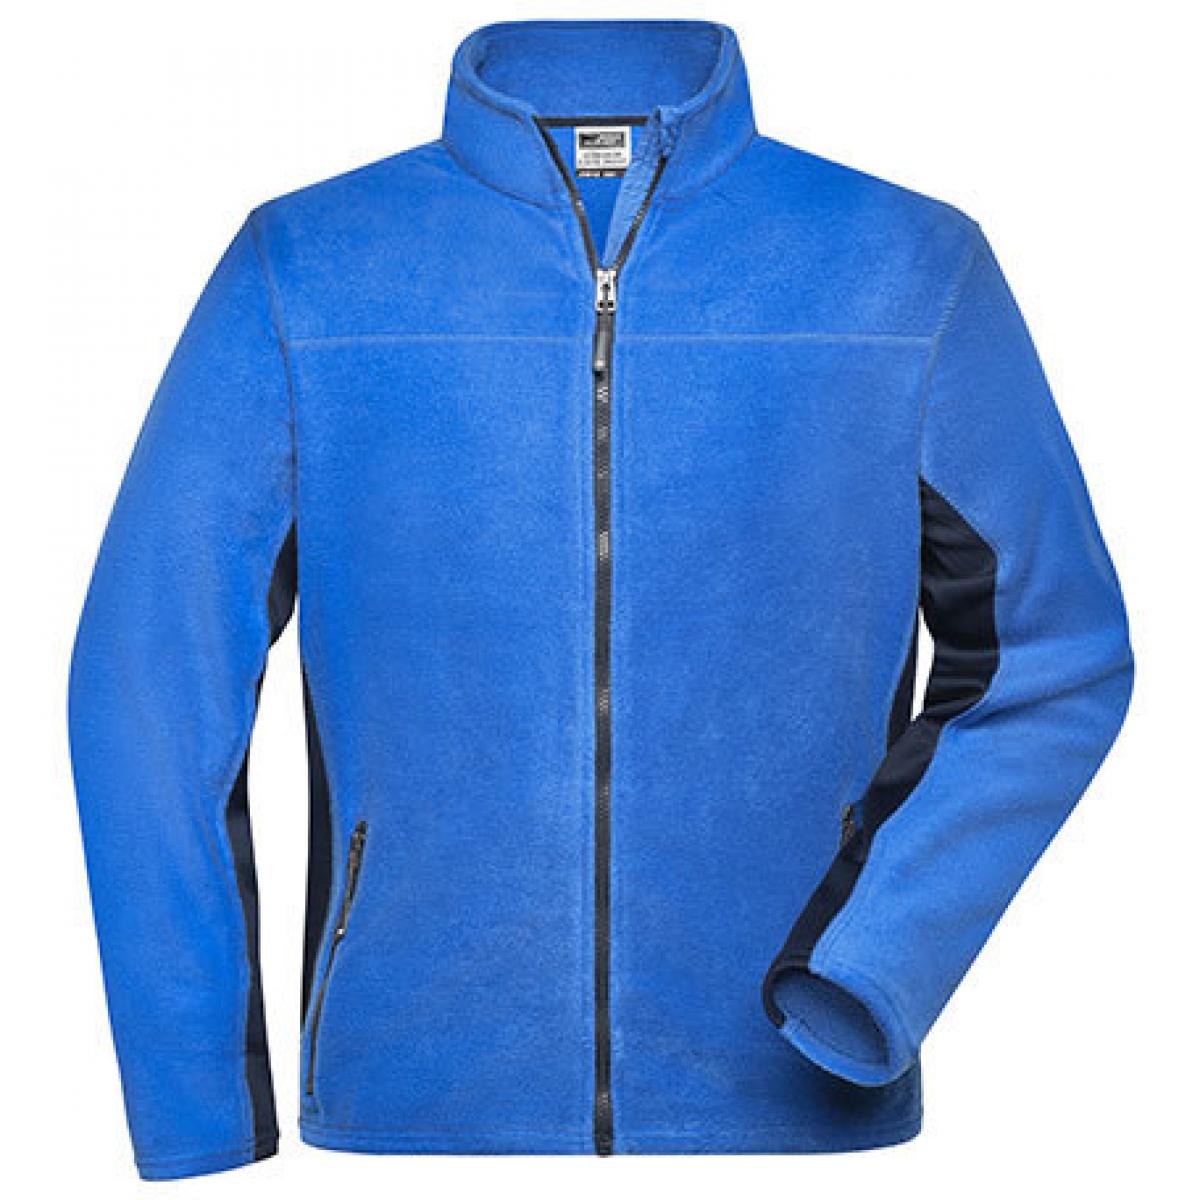 Hersteller: James+Nicholson Herstellernummer: JN842 Artikelbezeichnung: Herren Jacke, Men‘s Workwear Fleece Jacket -STRONG- Farbe: Royal/Navy